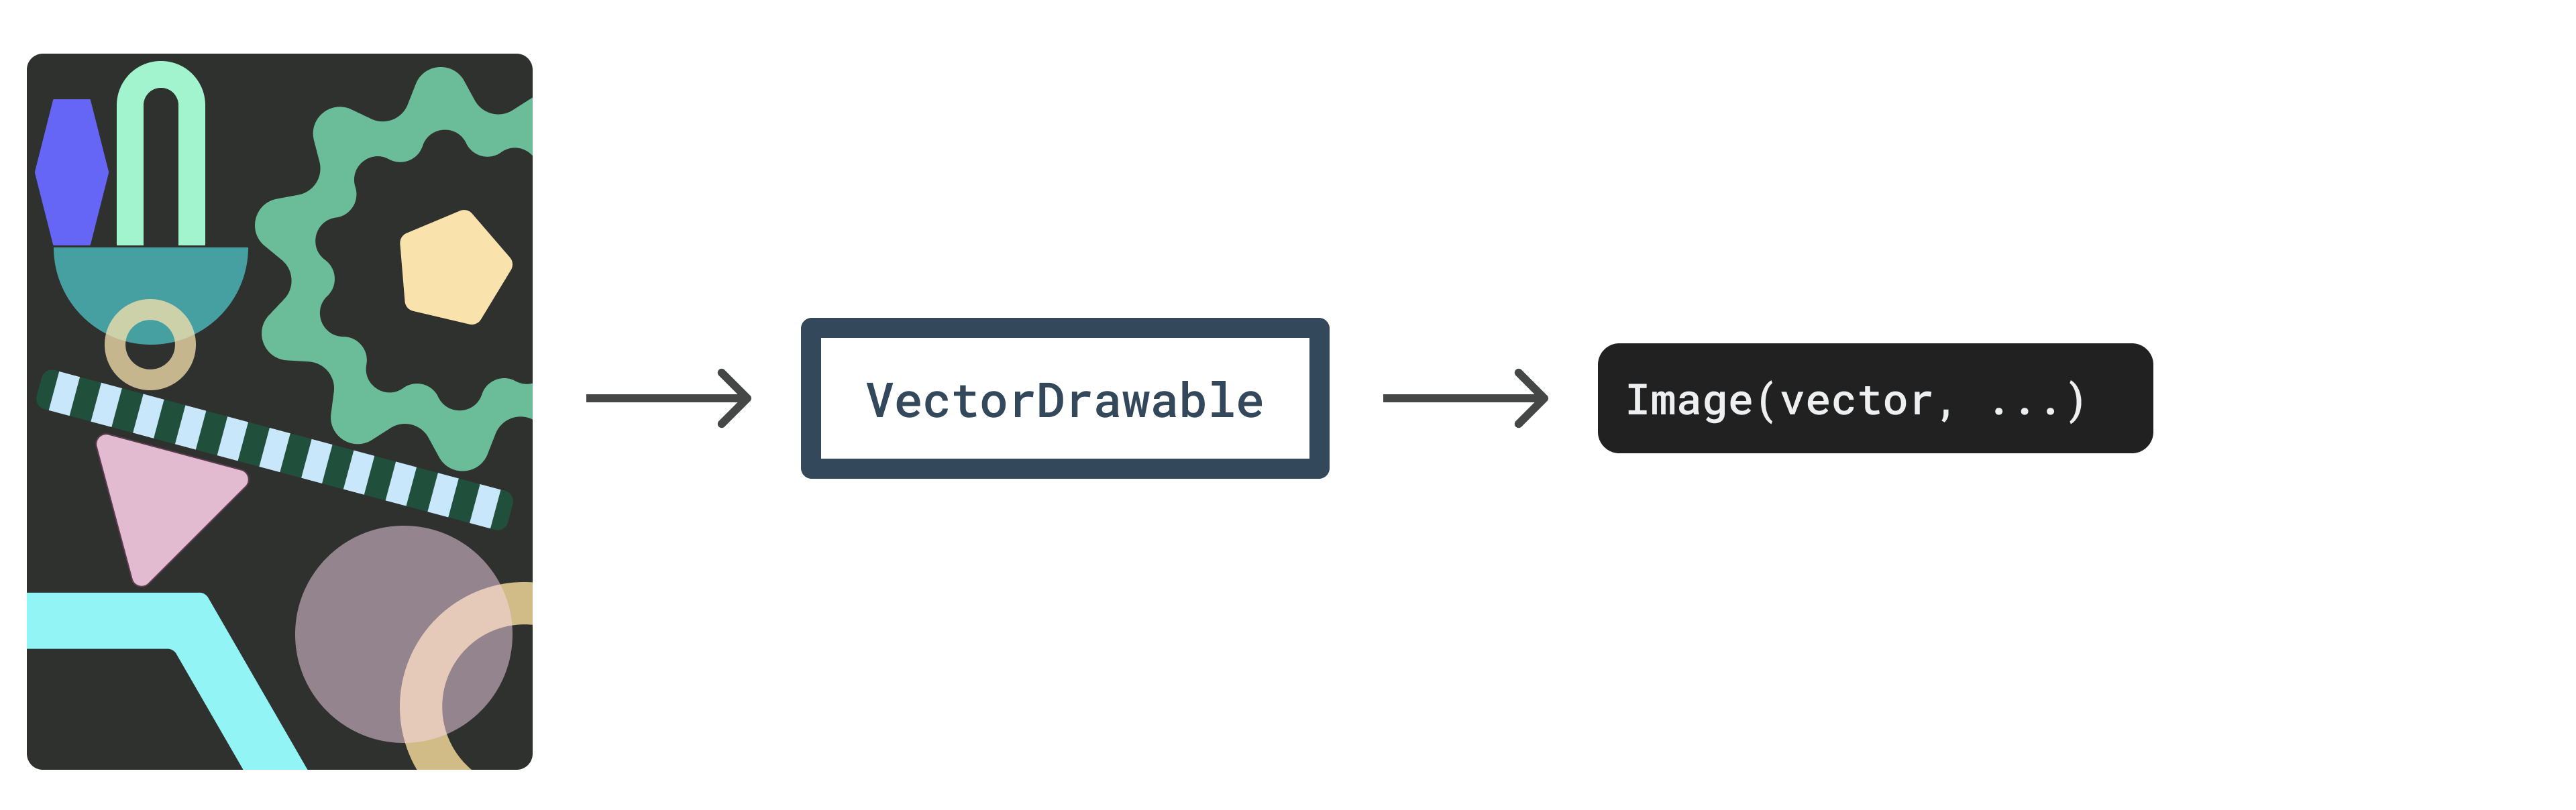 Diagrama: Capas vectoriales a VectorDrawable a Image